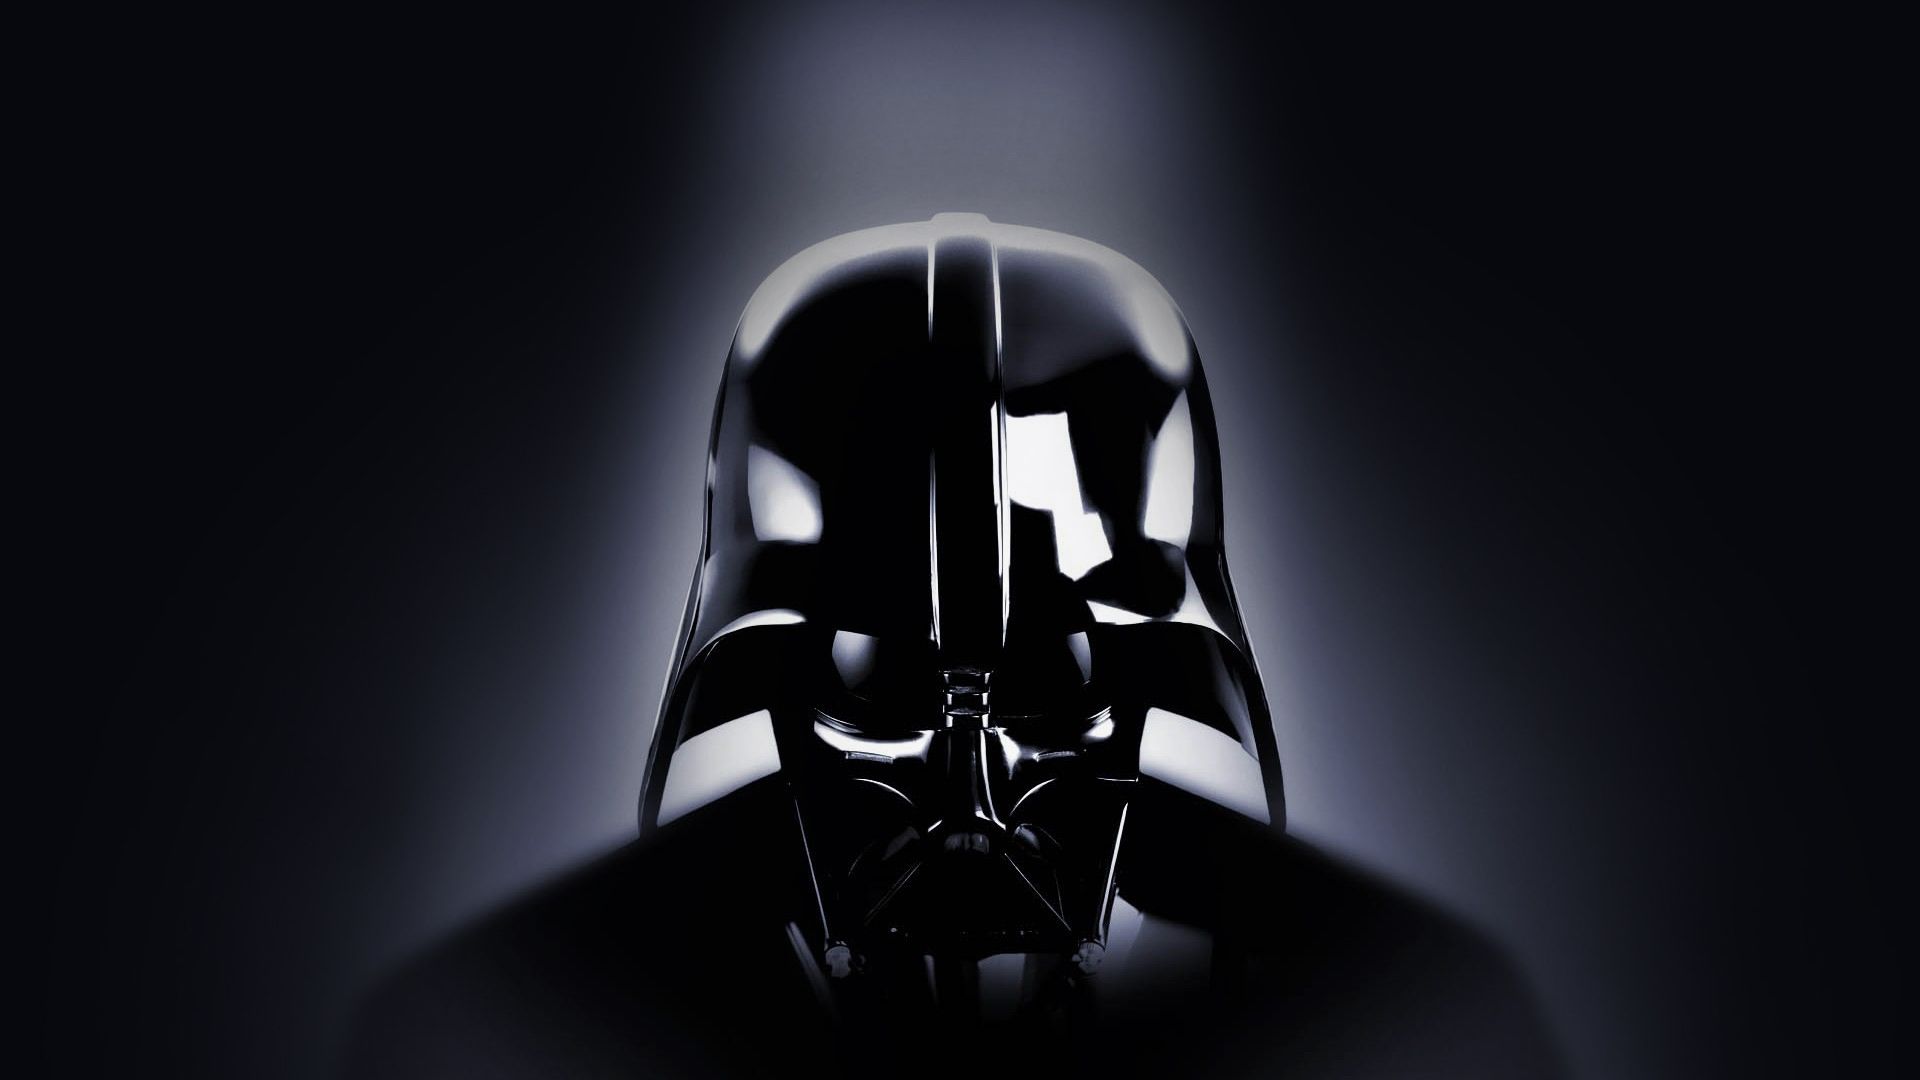 Wallpaper Villain, Darth Vader, Star wars